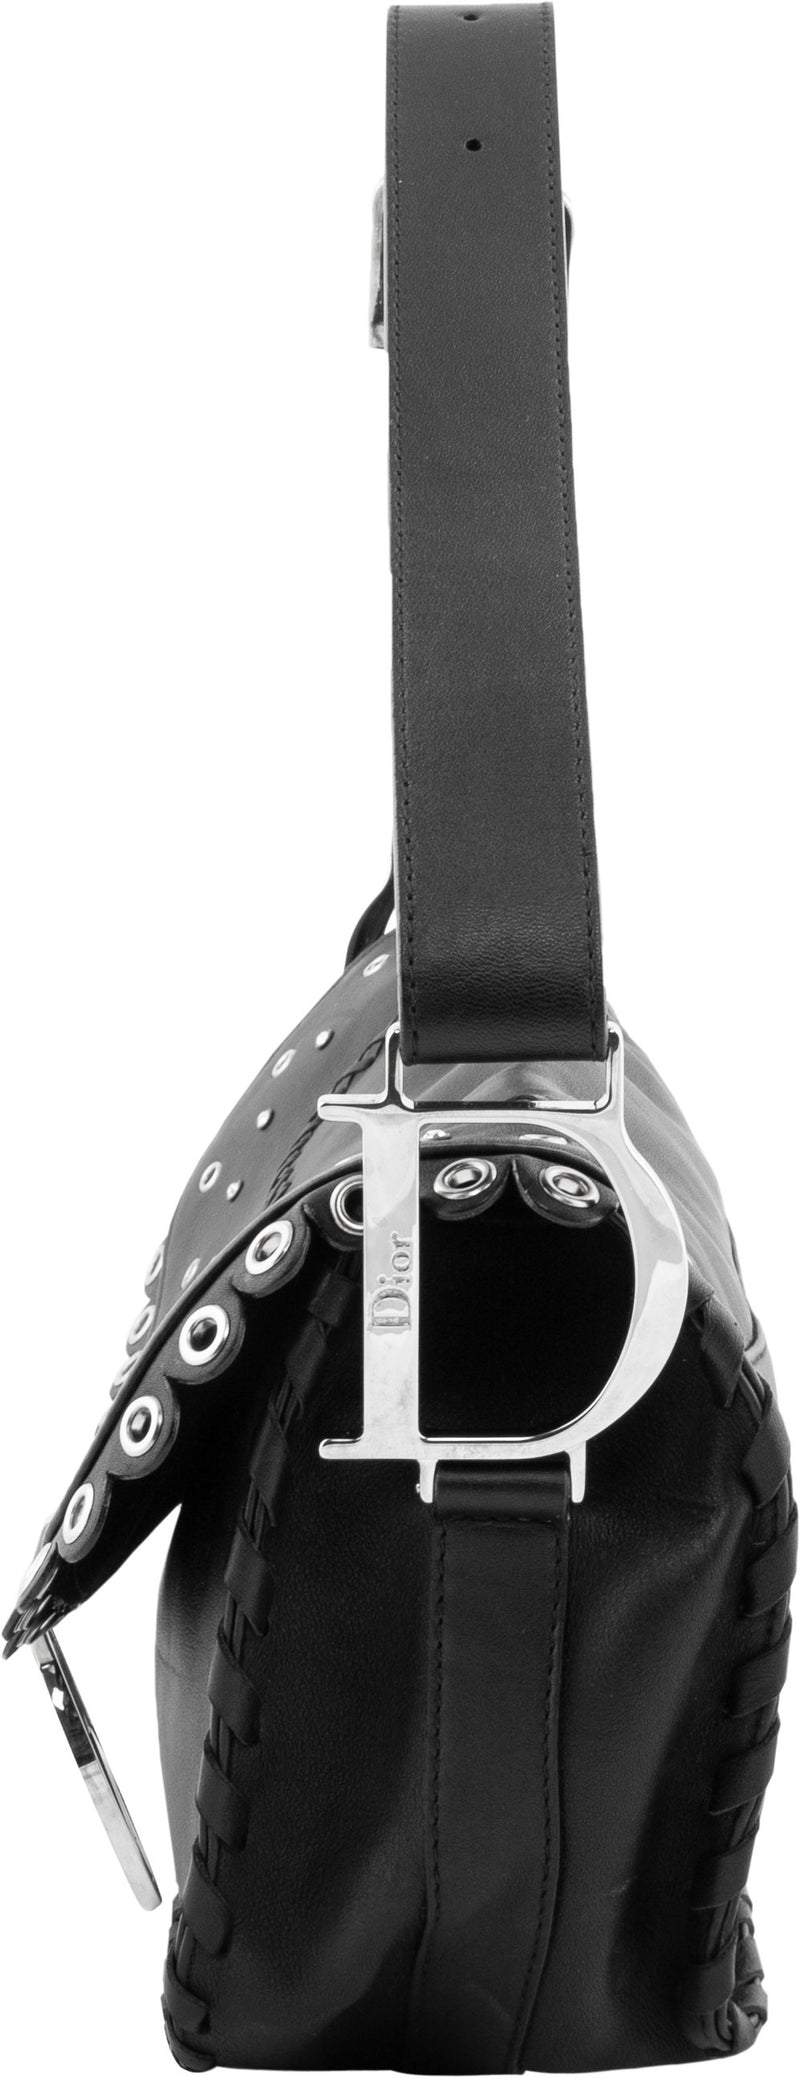 Christian Dior Logo Peace Sign Leather Shoulder Bag